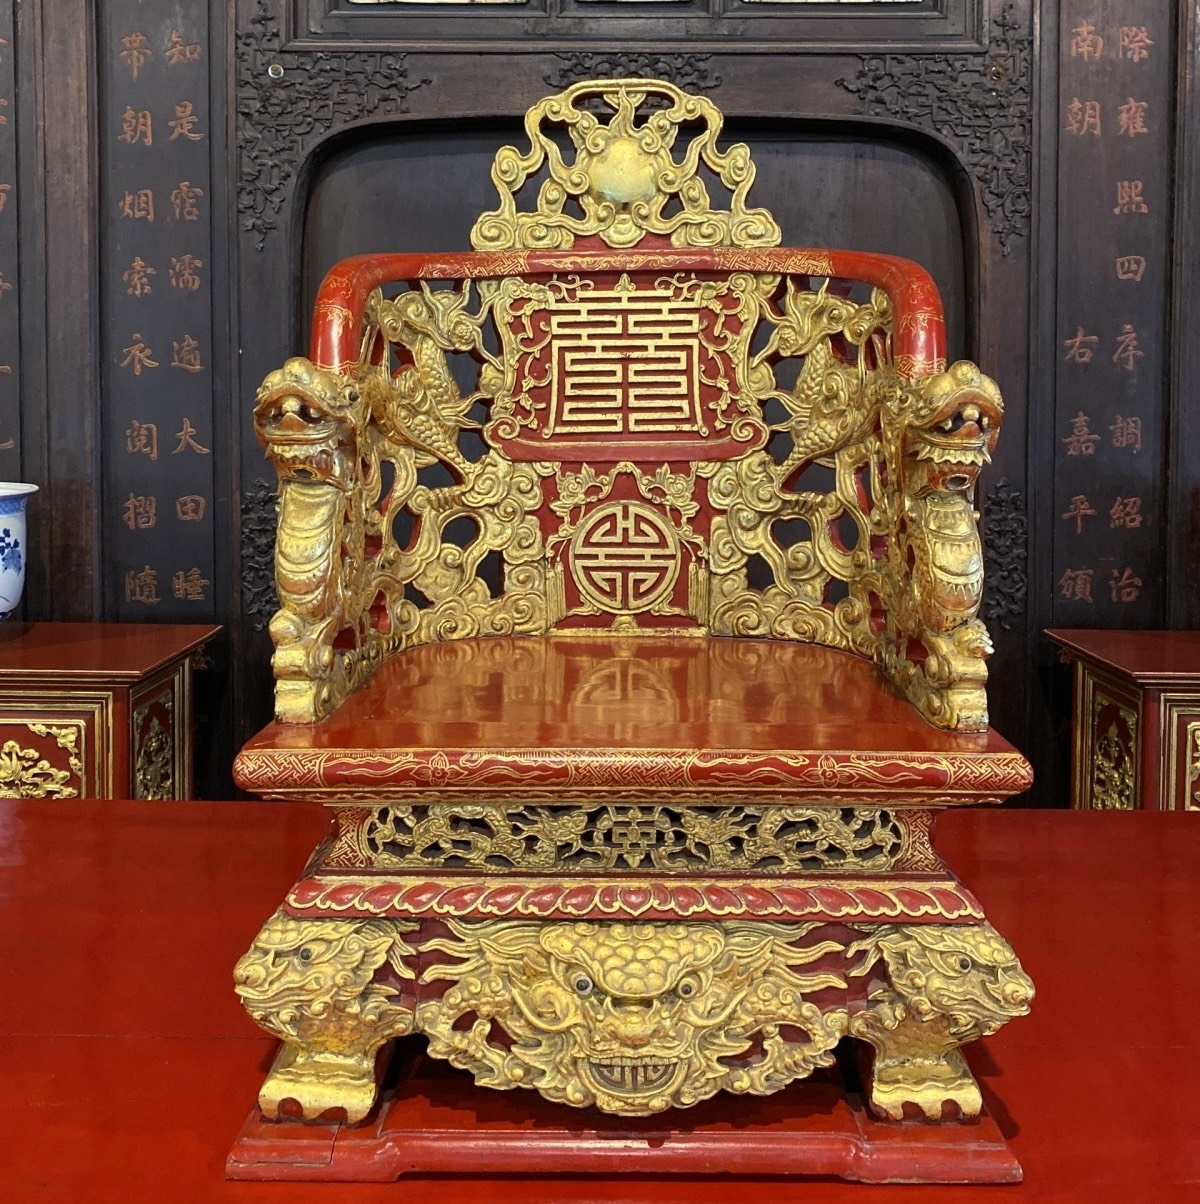 Ngai vua bằng chất liệu gỗ sơn son thếp vàng, thời Khải Định (1916-1925) trưng bày tại điện Long An - Bảo tàng Cổ vật Cung đình Huế. (Ảnh: Trung tâm Bảo tồn Di tích Cố đô Huế)